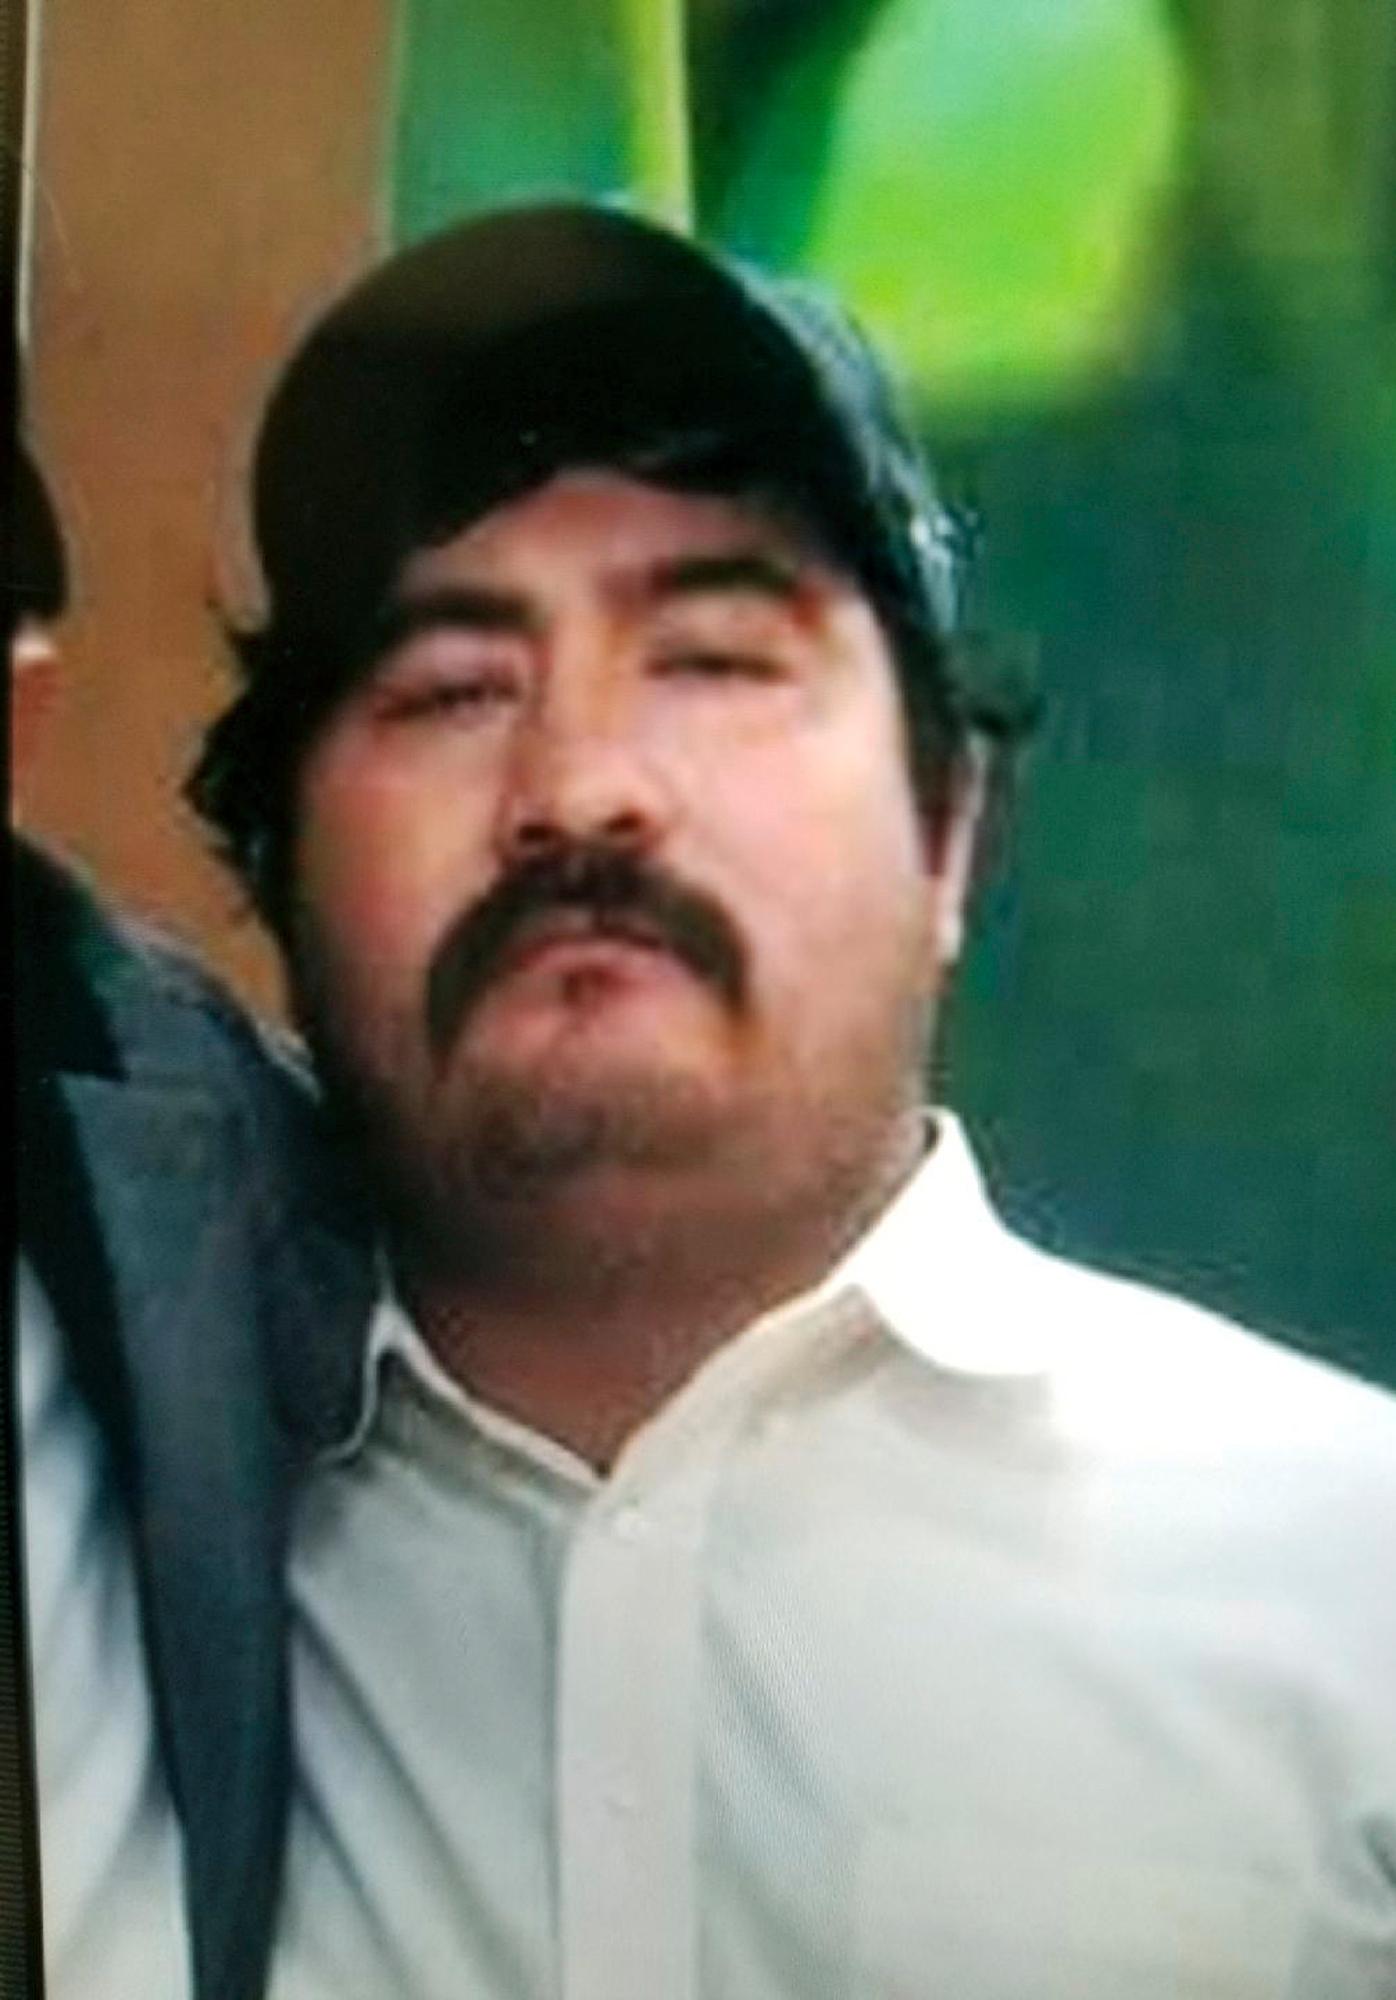 Magdiel Sanchez, 35, sköts ihjäl utanför sitt hem i Oklahoma av polisen.